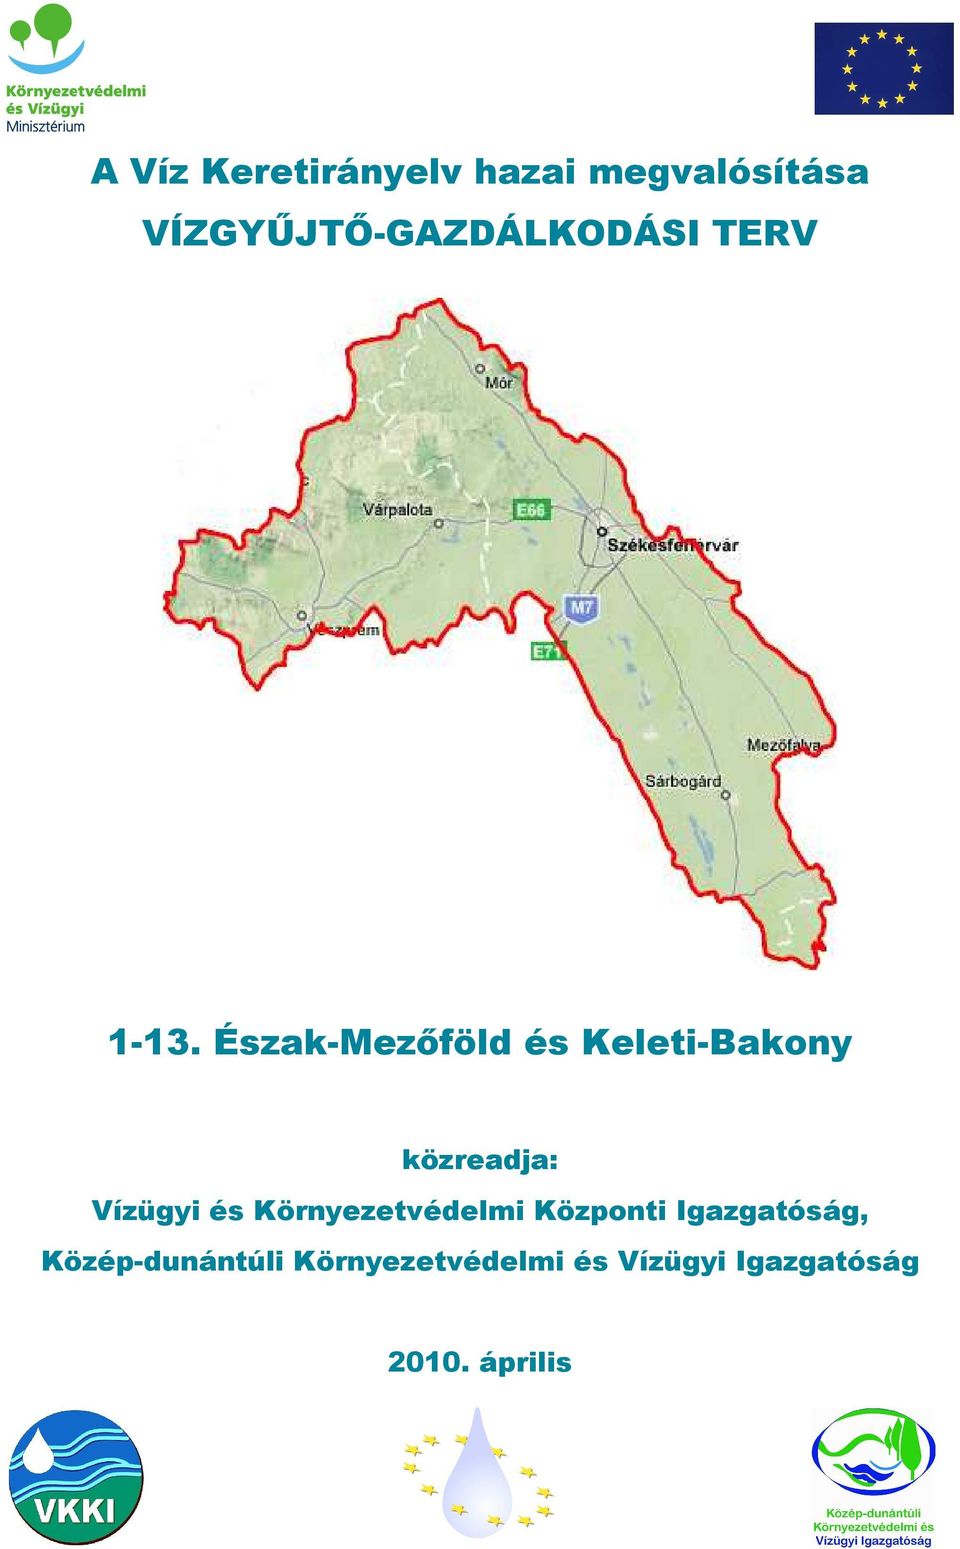 Észak-Mezőföld és Keleti-Bakony közreadja: Vízügyi és